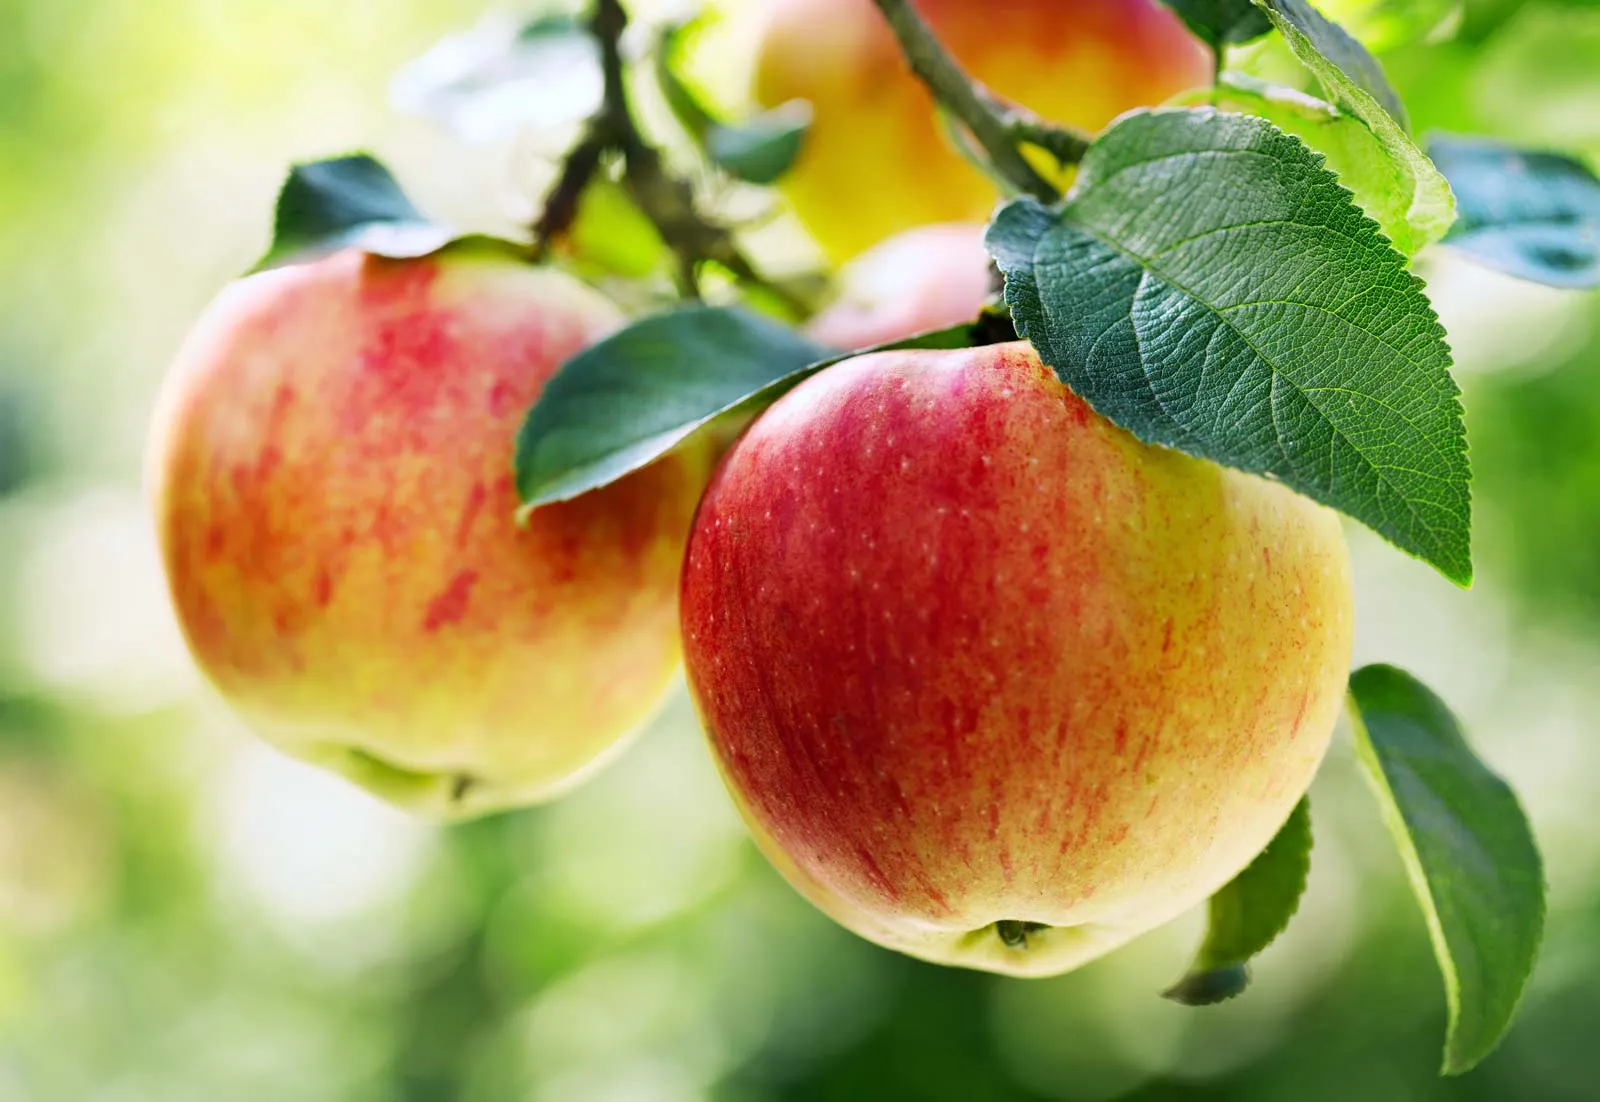 مقدمة عن زراعة وري محاصيل التفاح